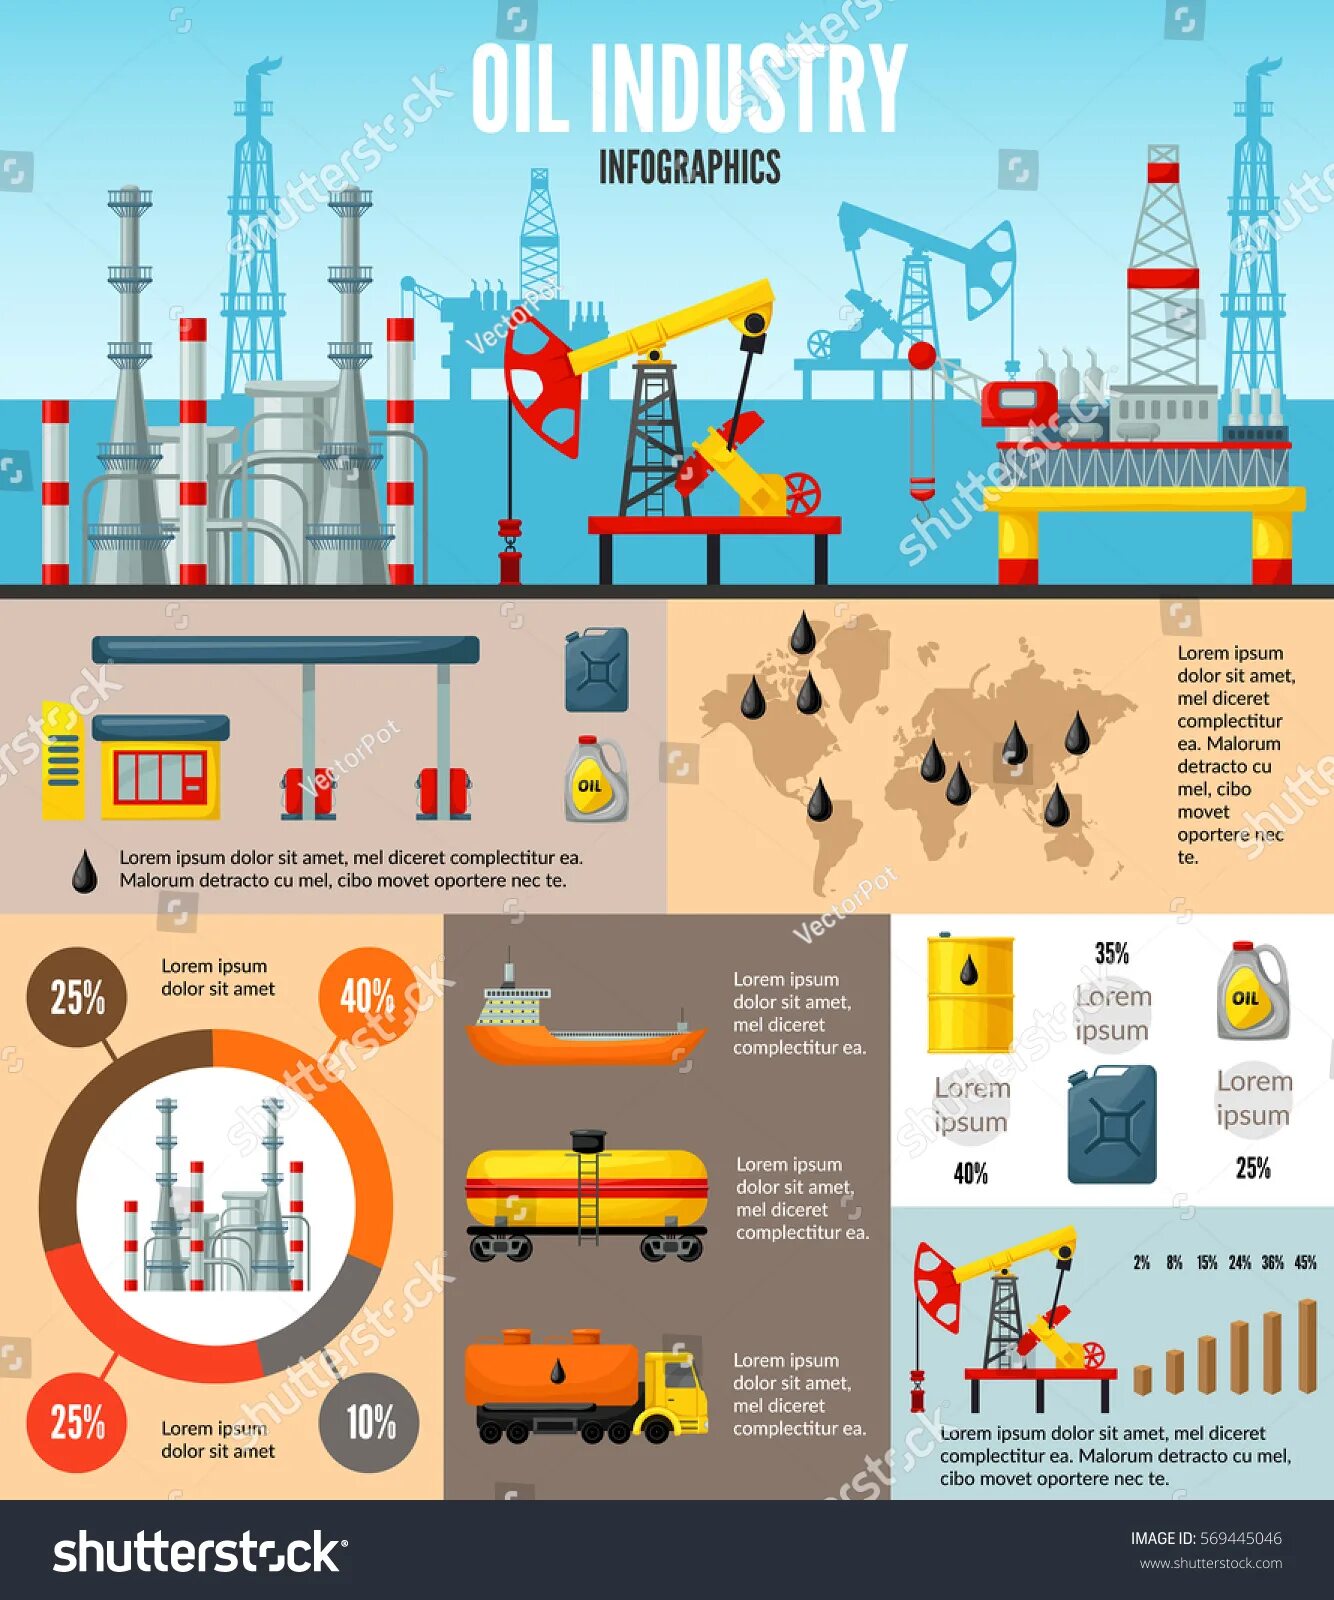 Добыча на английском. Инфографика нефтегазовая отрасль. Инфографика нефть. Инфографика нефтянка. Инфографика нефтяная промышленность.